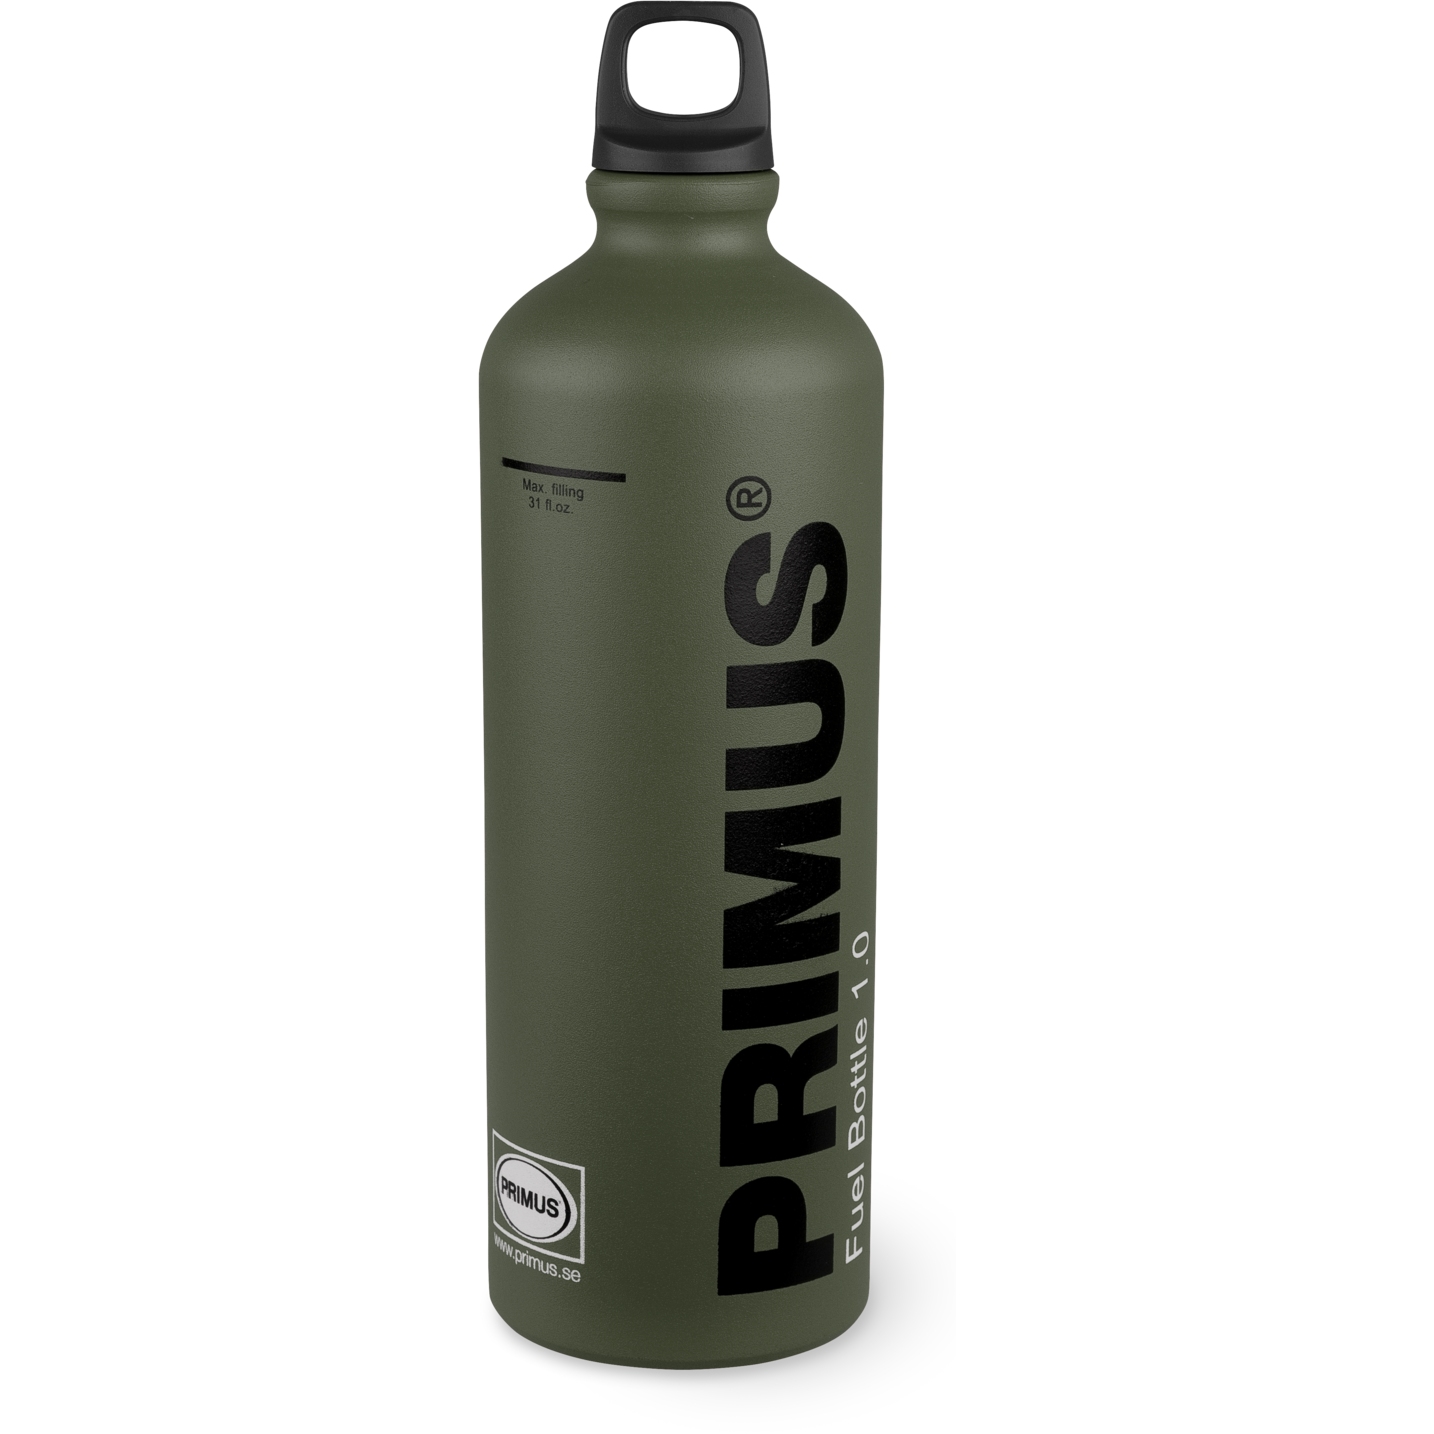 Productfoto van Primus Fuel Bottle 1.0L Brandstoffles - groen